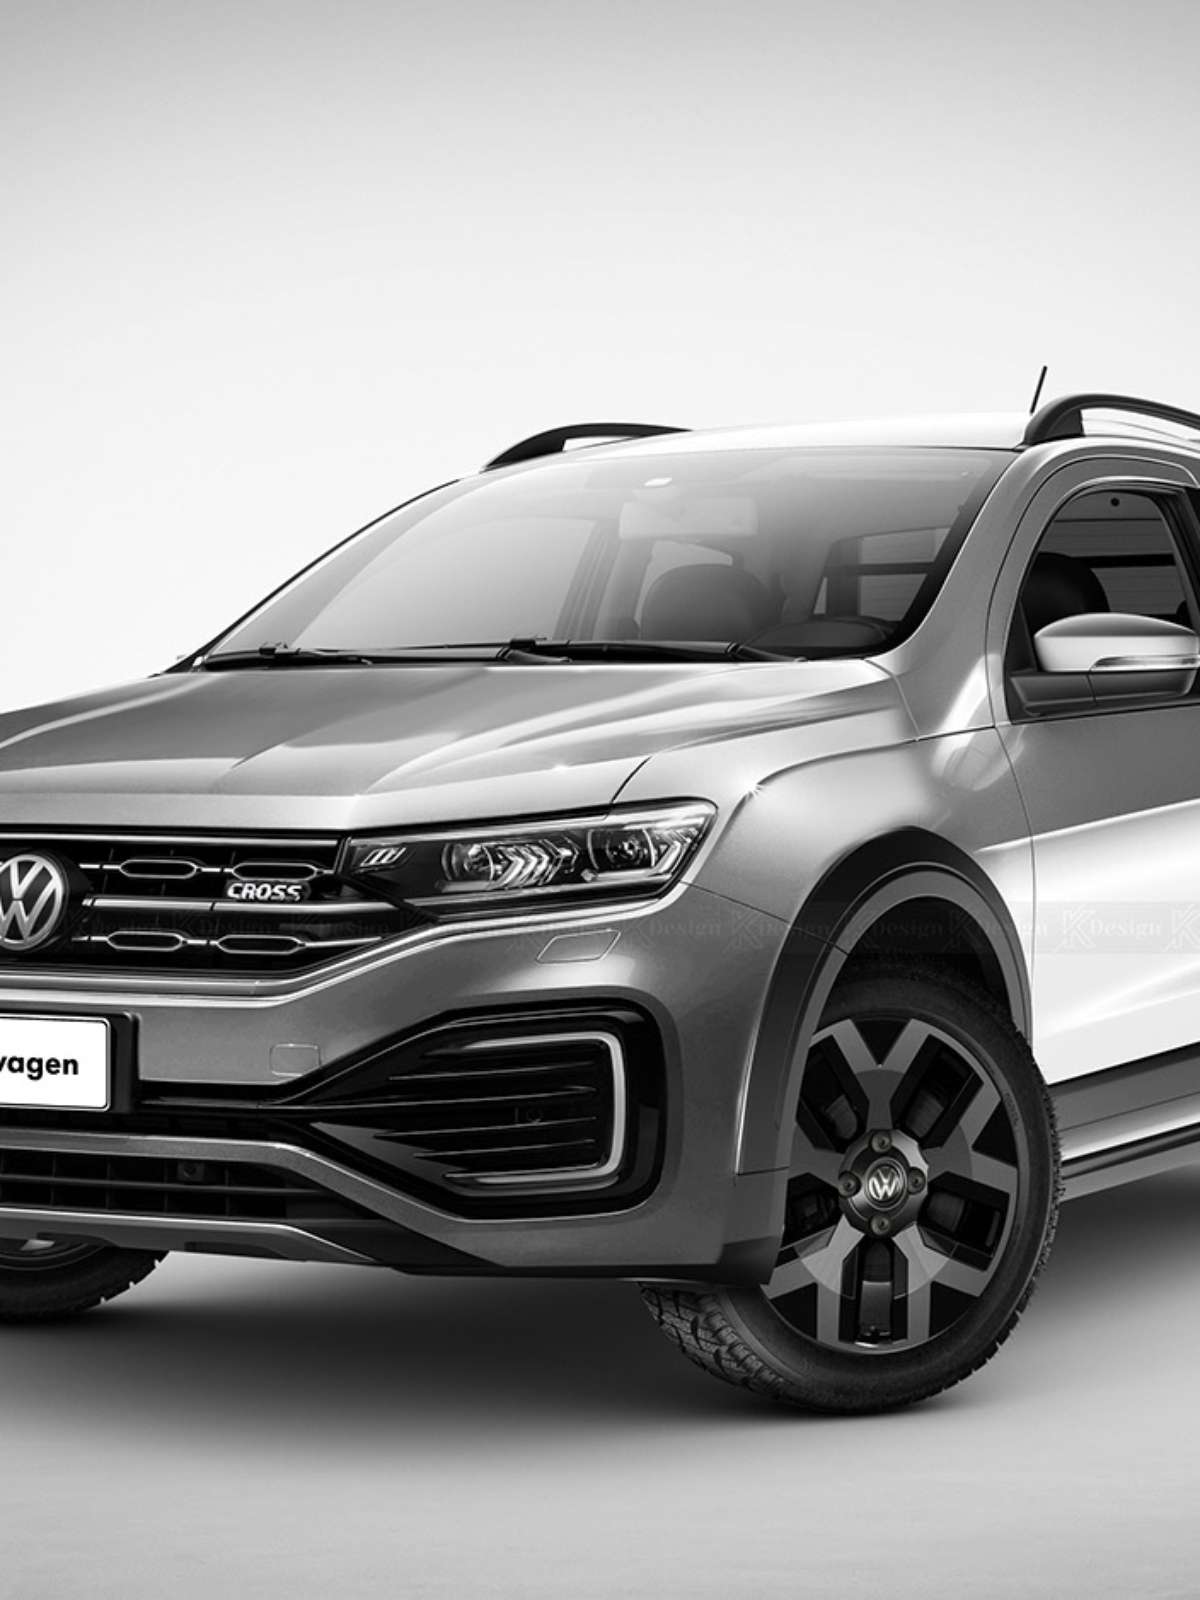 Lançamento Nova Volkswagen Saveiro Cross cabine dupla 2021 